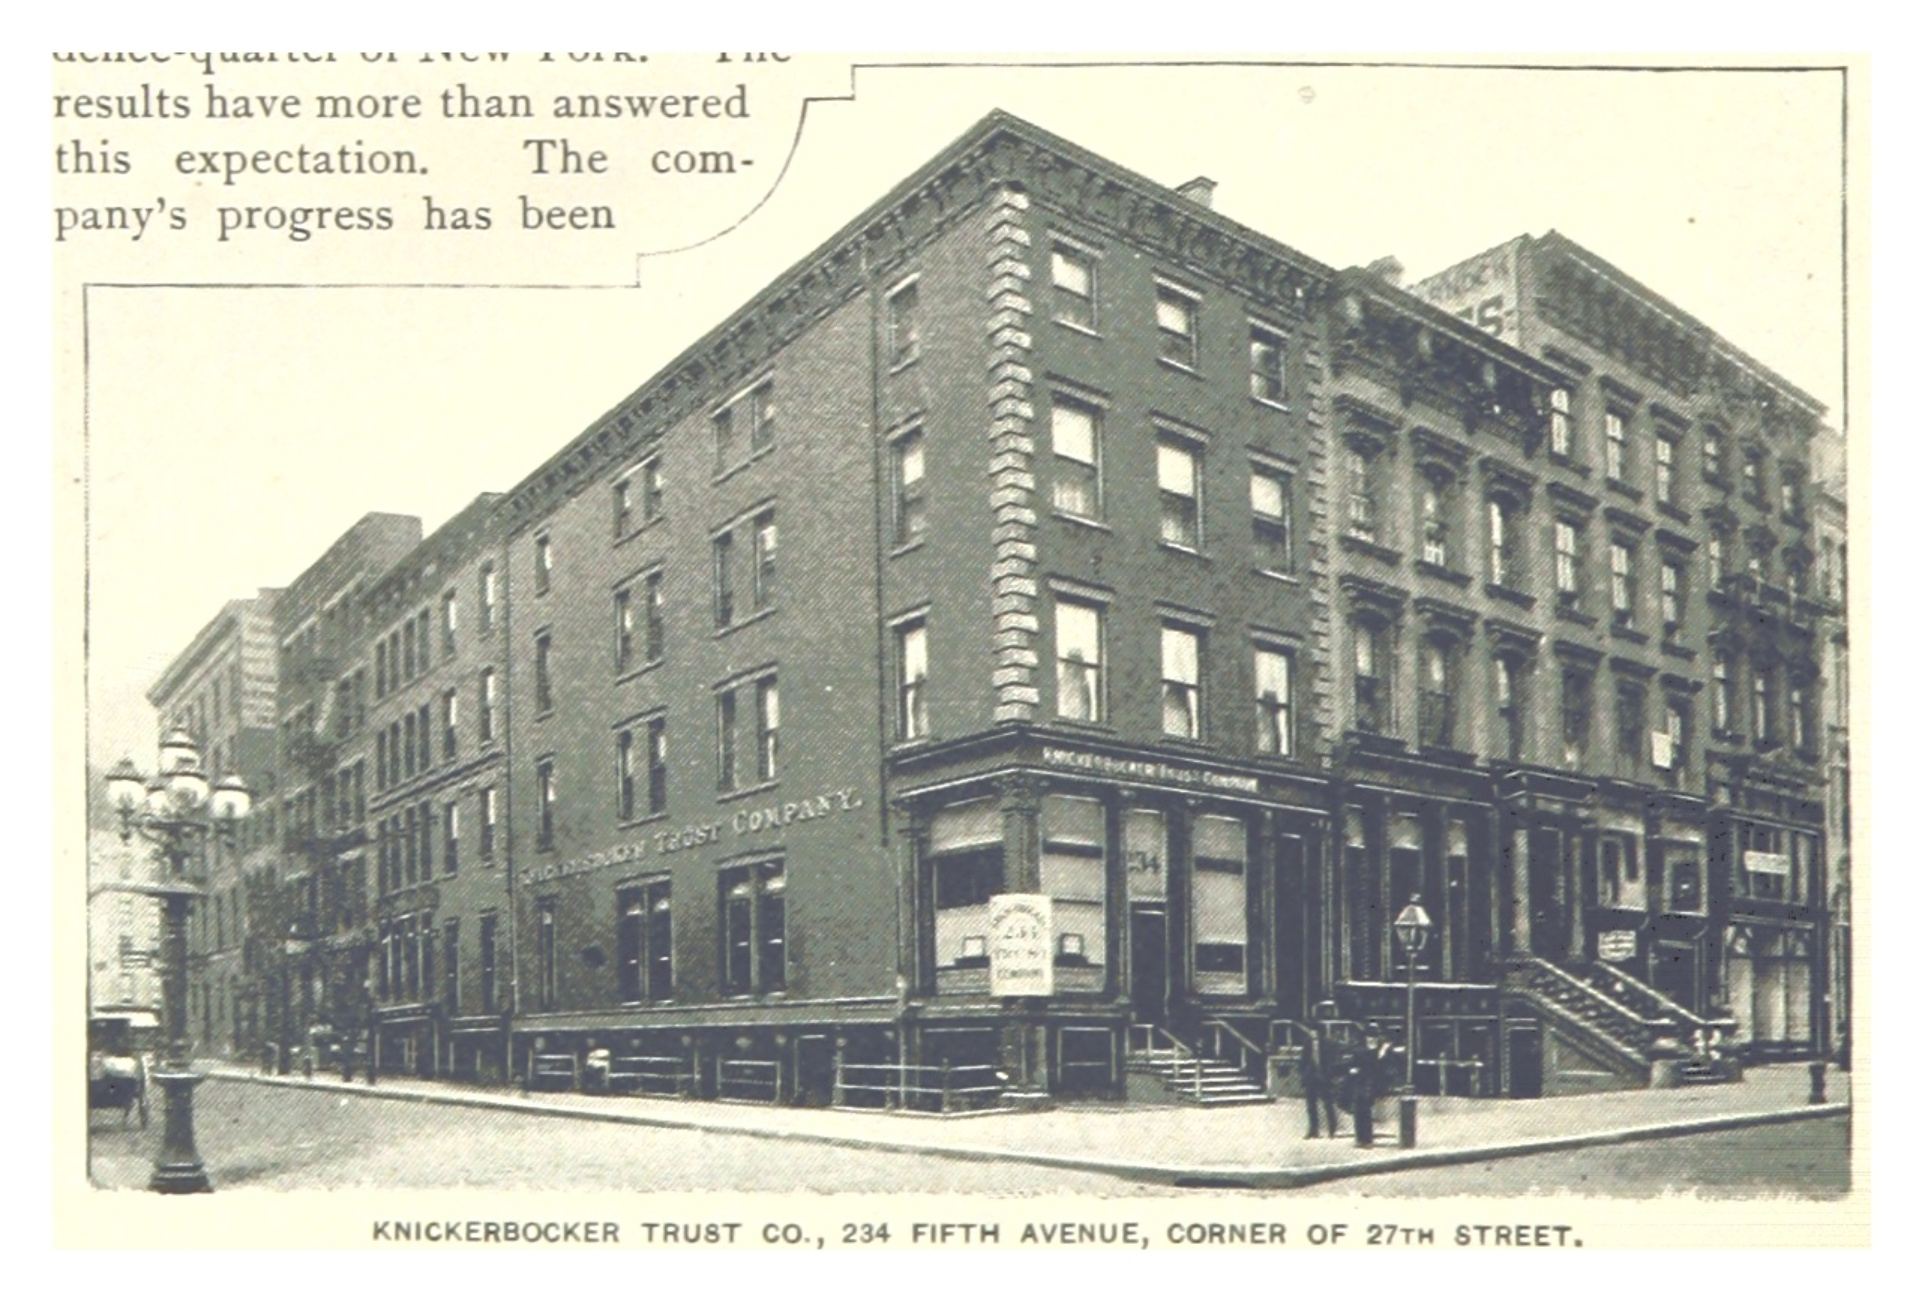 The Knickerbocker Trust Co., gelegen aan Fifth Avenue en 27th Street, de kruising waar Arnold voor het laatst werd gezien